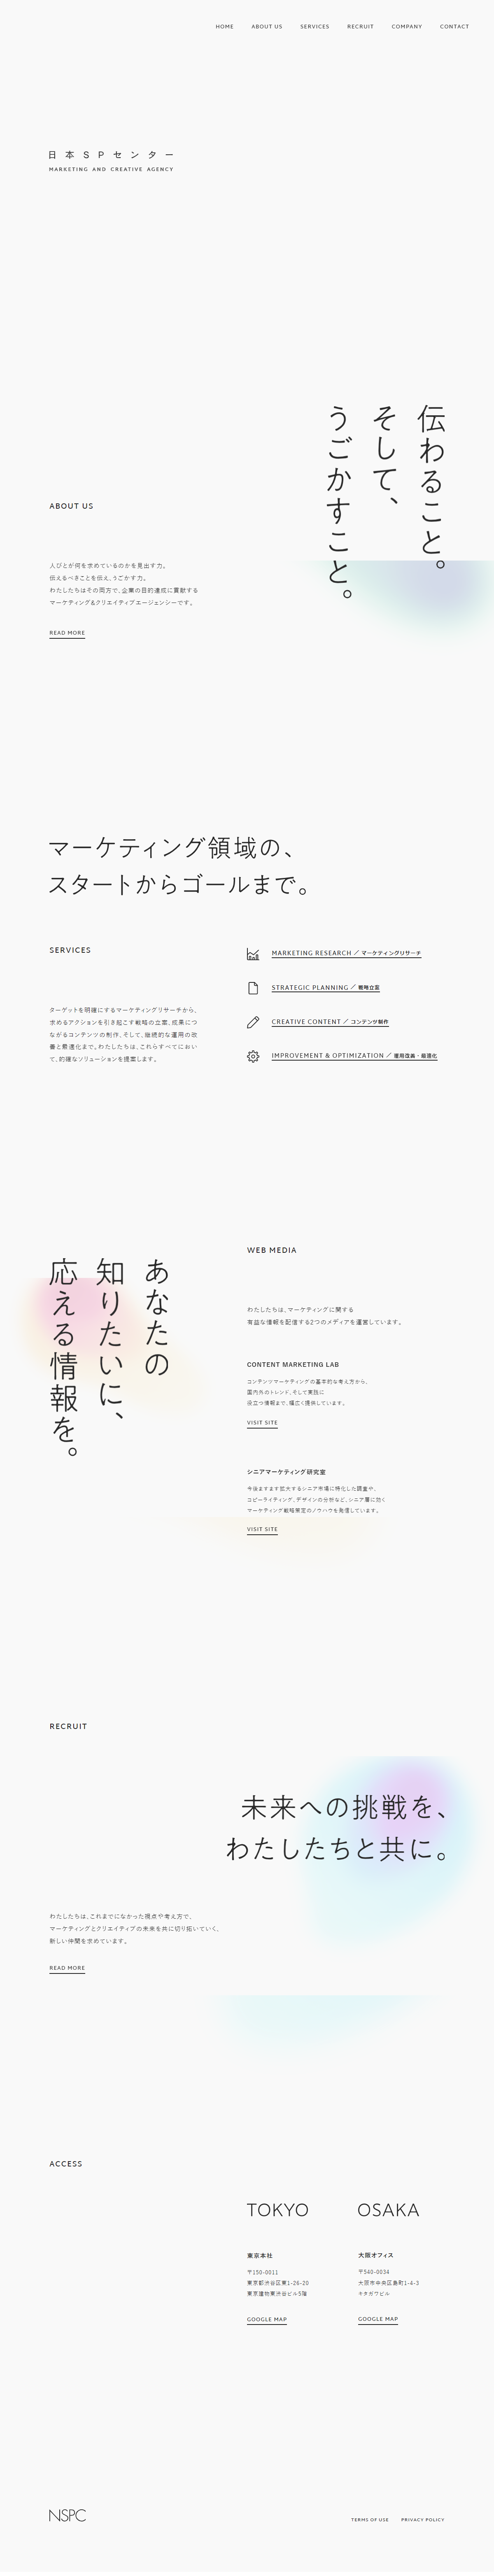 マーケティング・広告 コーポレートサイト制作 WEBデザイン参考ギャラリー 日本SPセンター